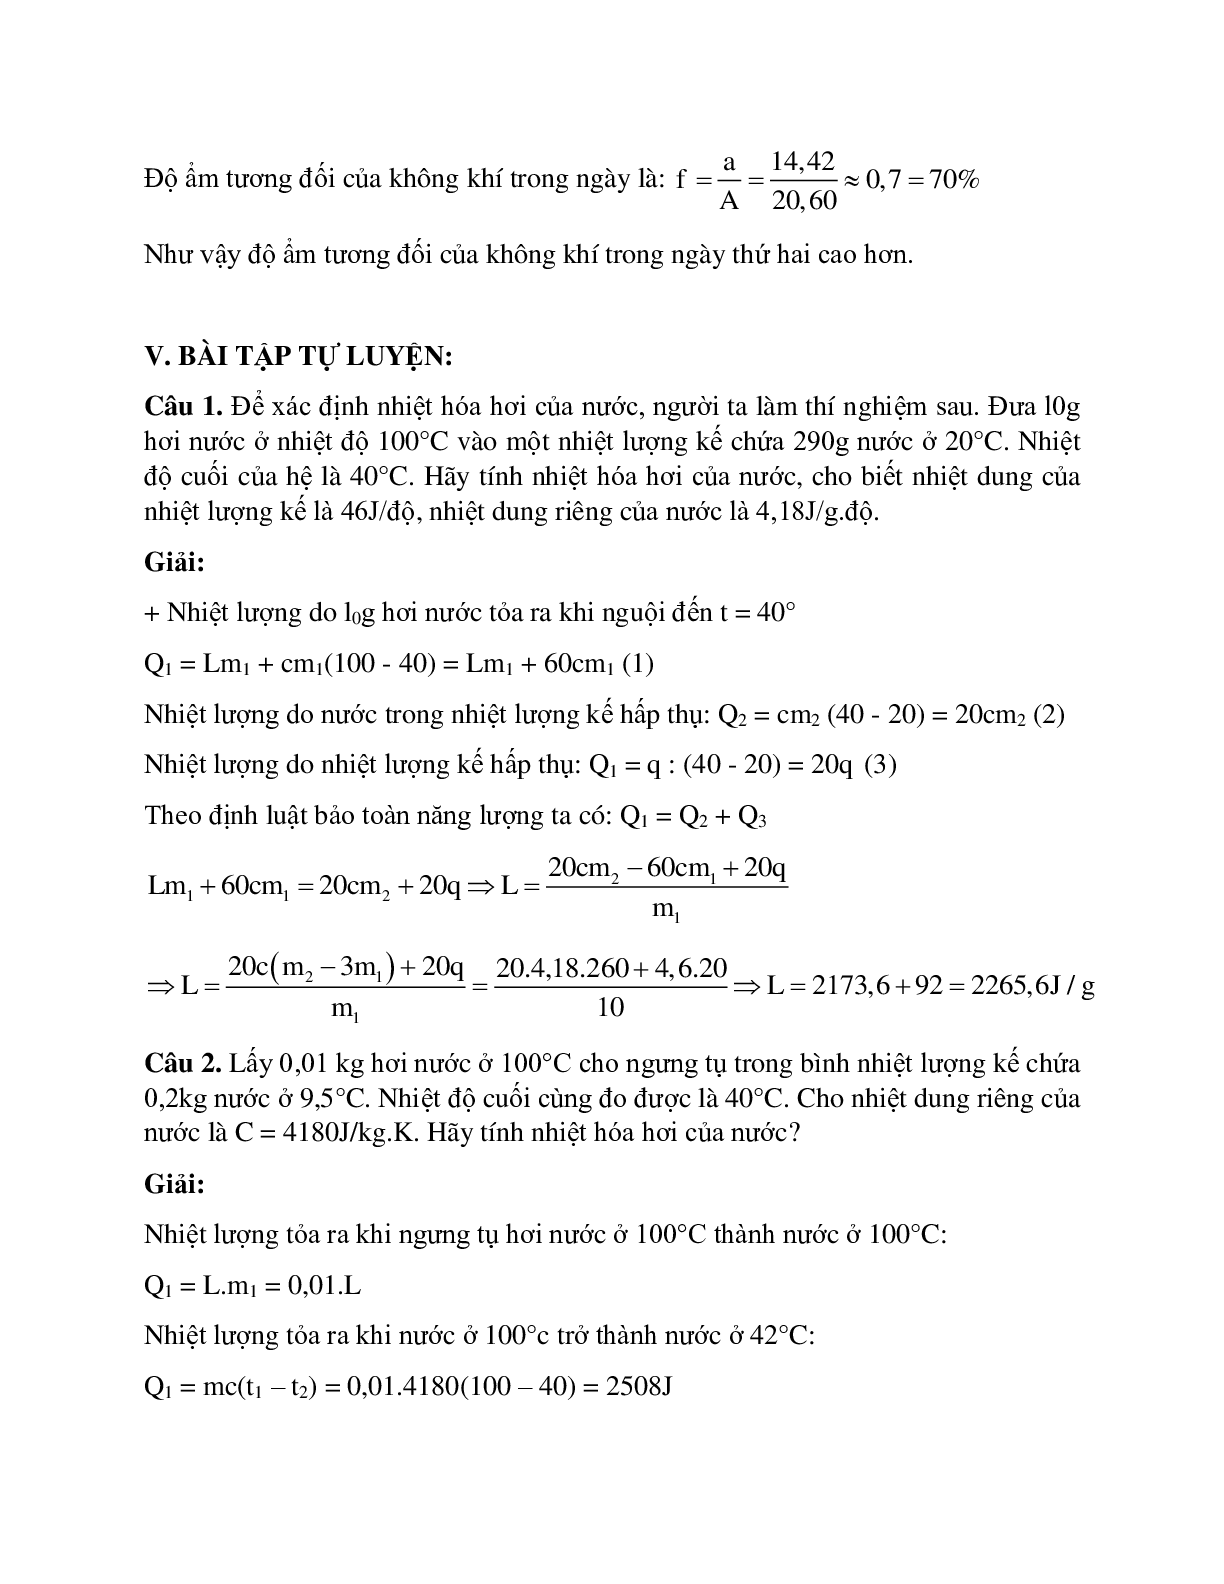 Bài tập về sự chuyển thể của các chất có lời giải (trang 5)